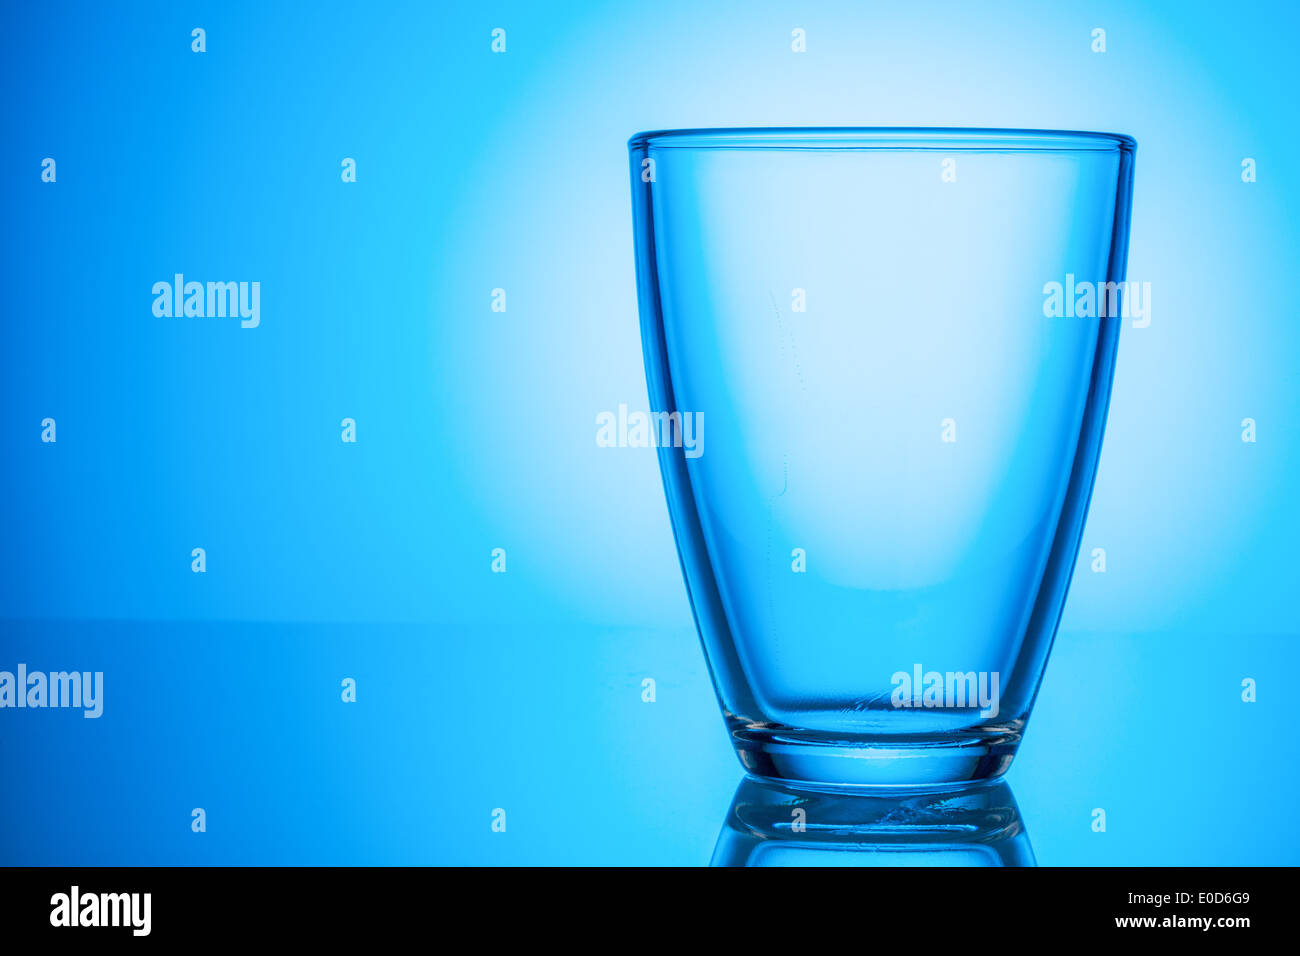 Un bicchiere vuoto sta davanti a uno sfondo blu., Ein leeres Glas steht vor einem blauen Hintergrund. Foto Stock